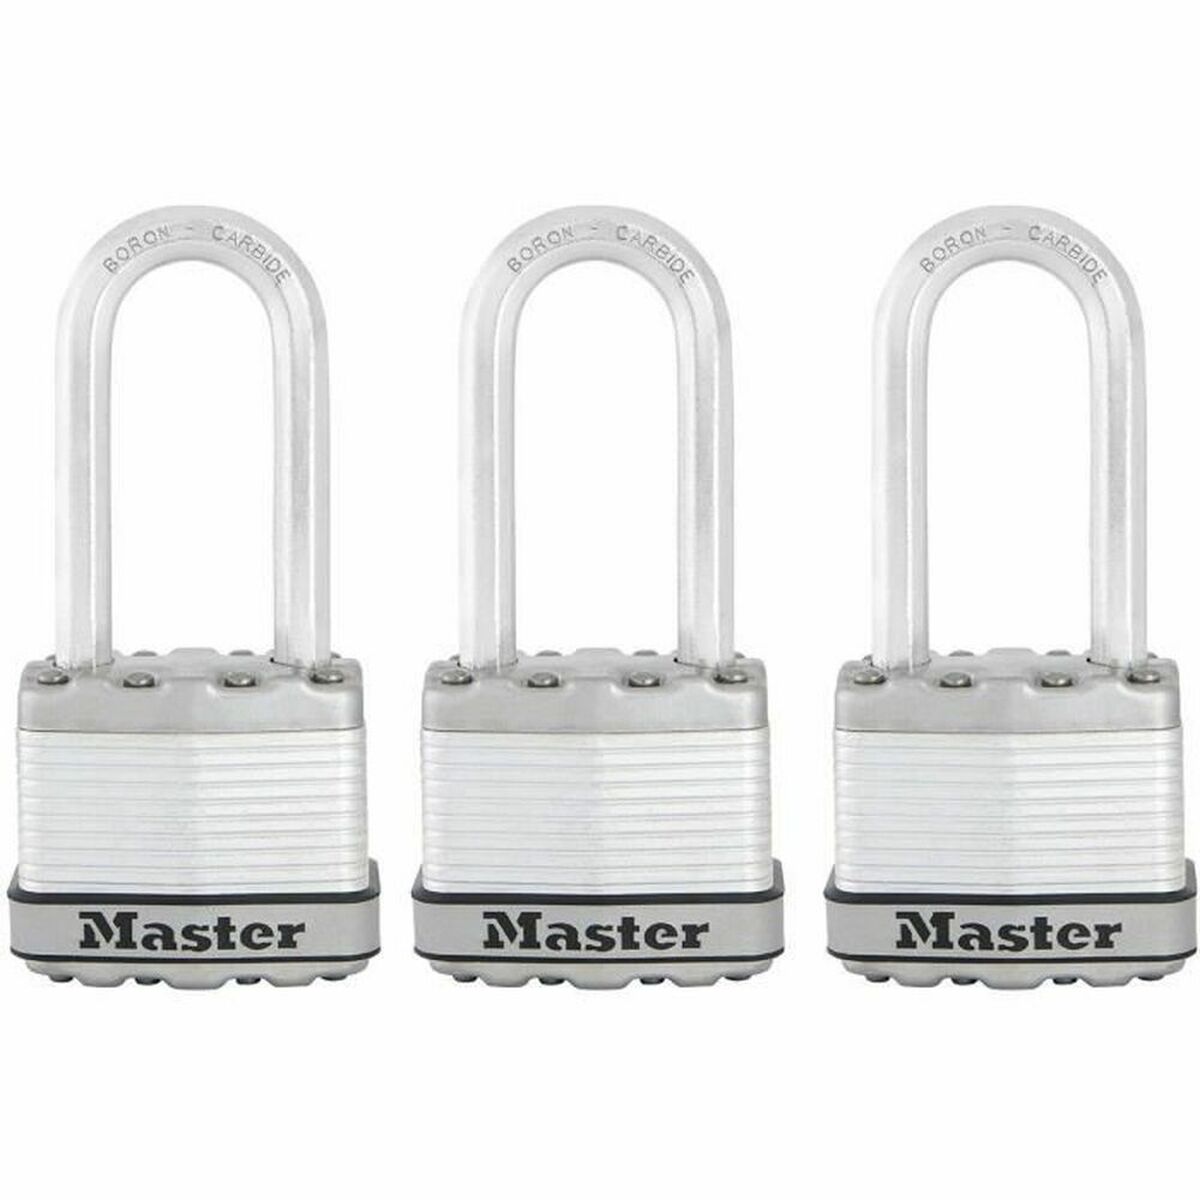 Avainriippulukko Master Lock 45 mm